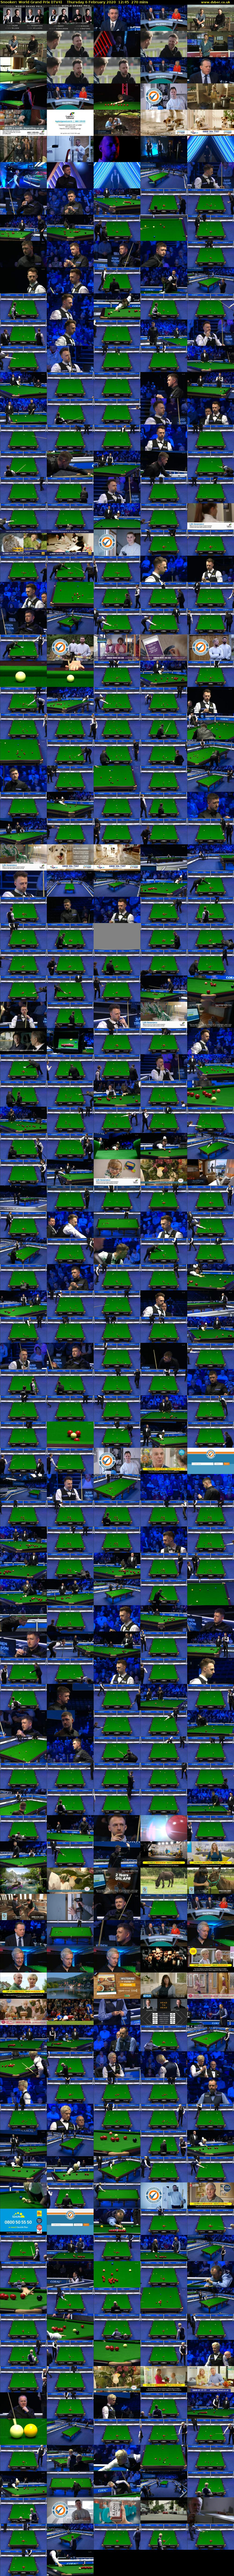 Snooker: World Grand Prix (ITV4) Thursday 6 February 2020 12:45 - 17:15